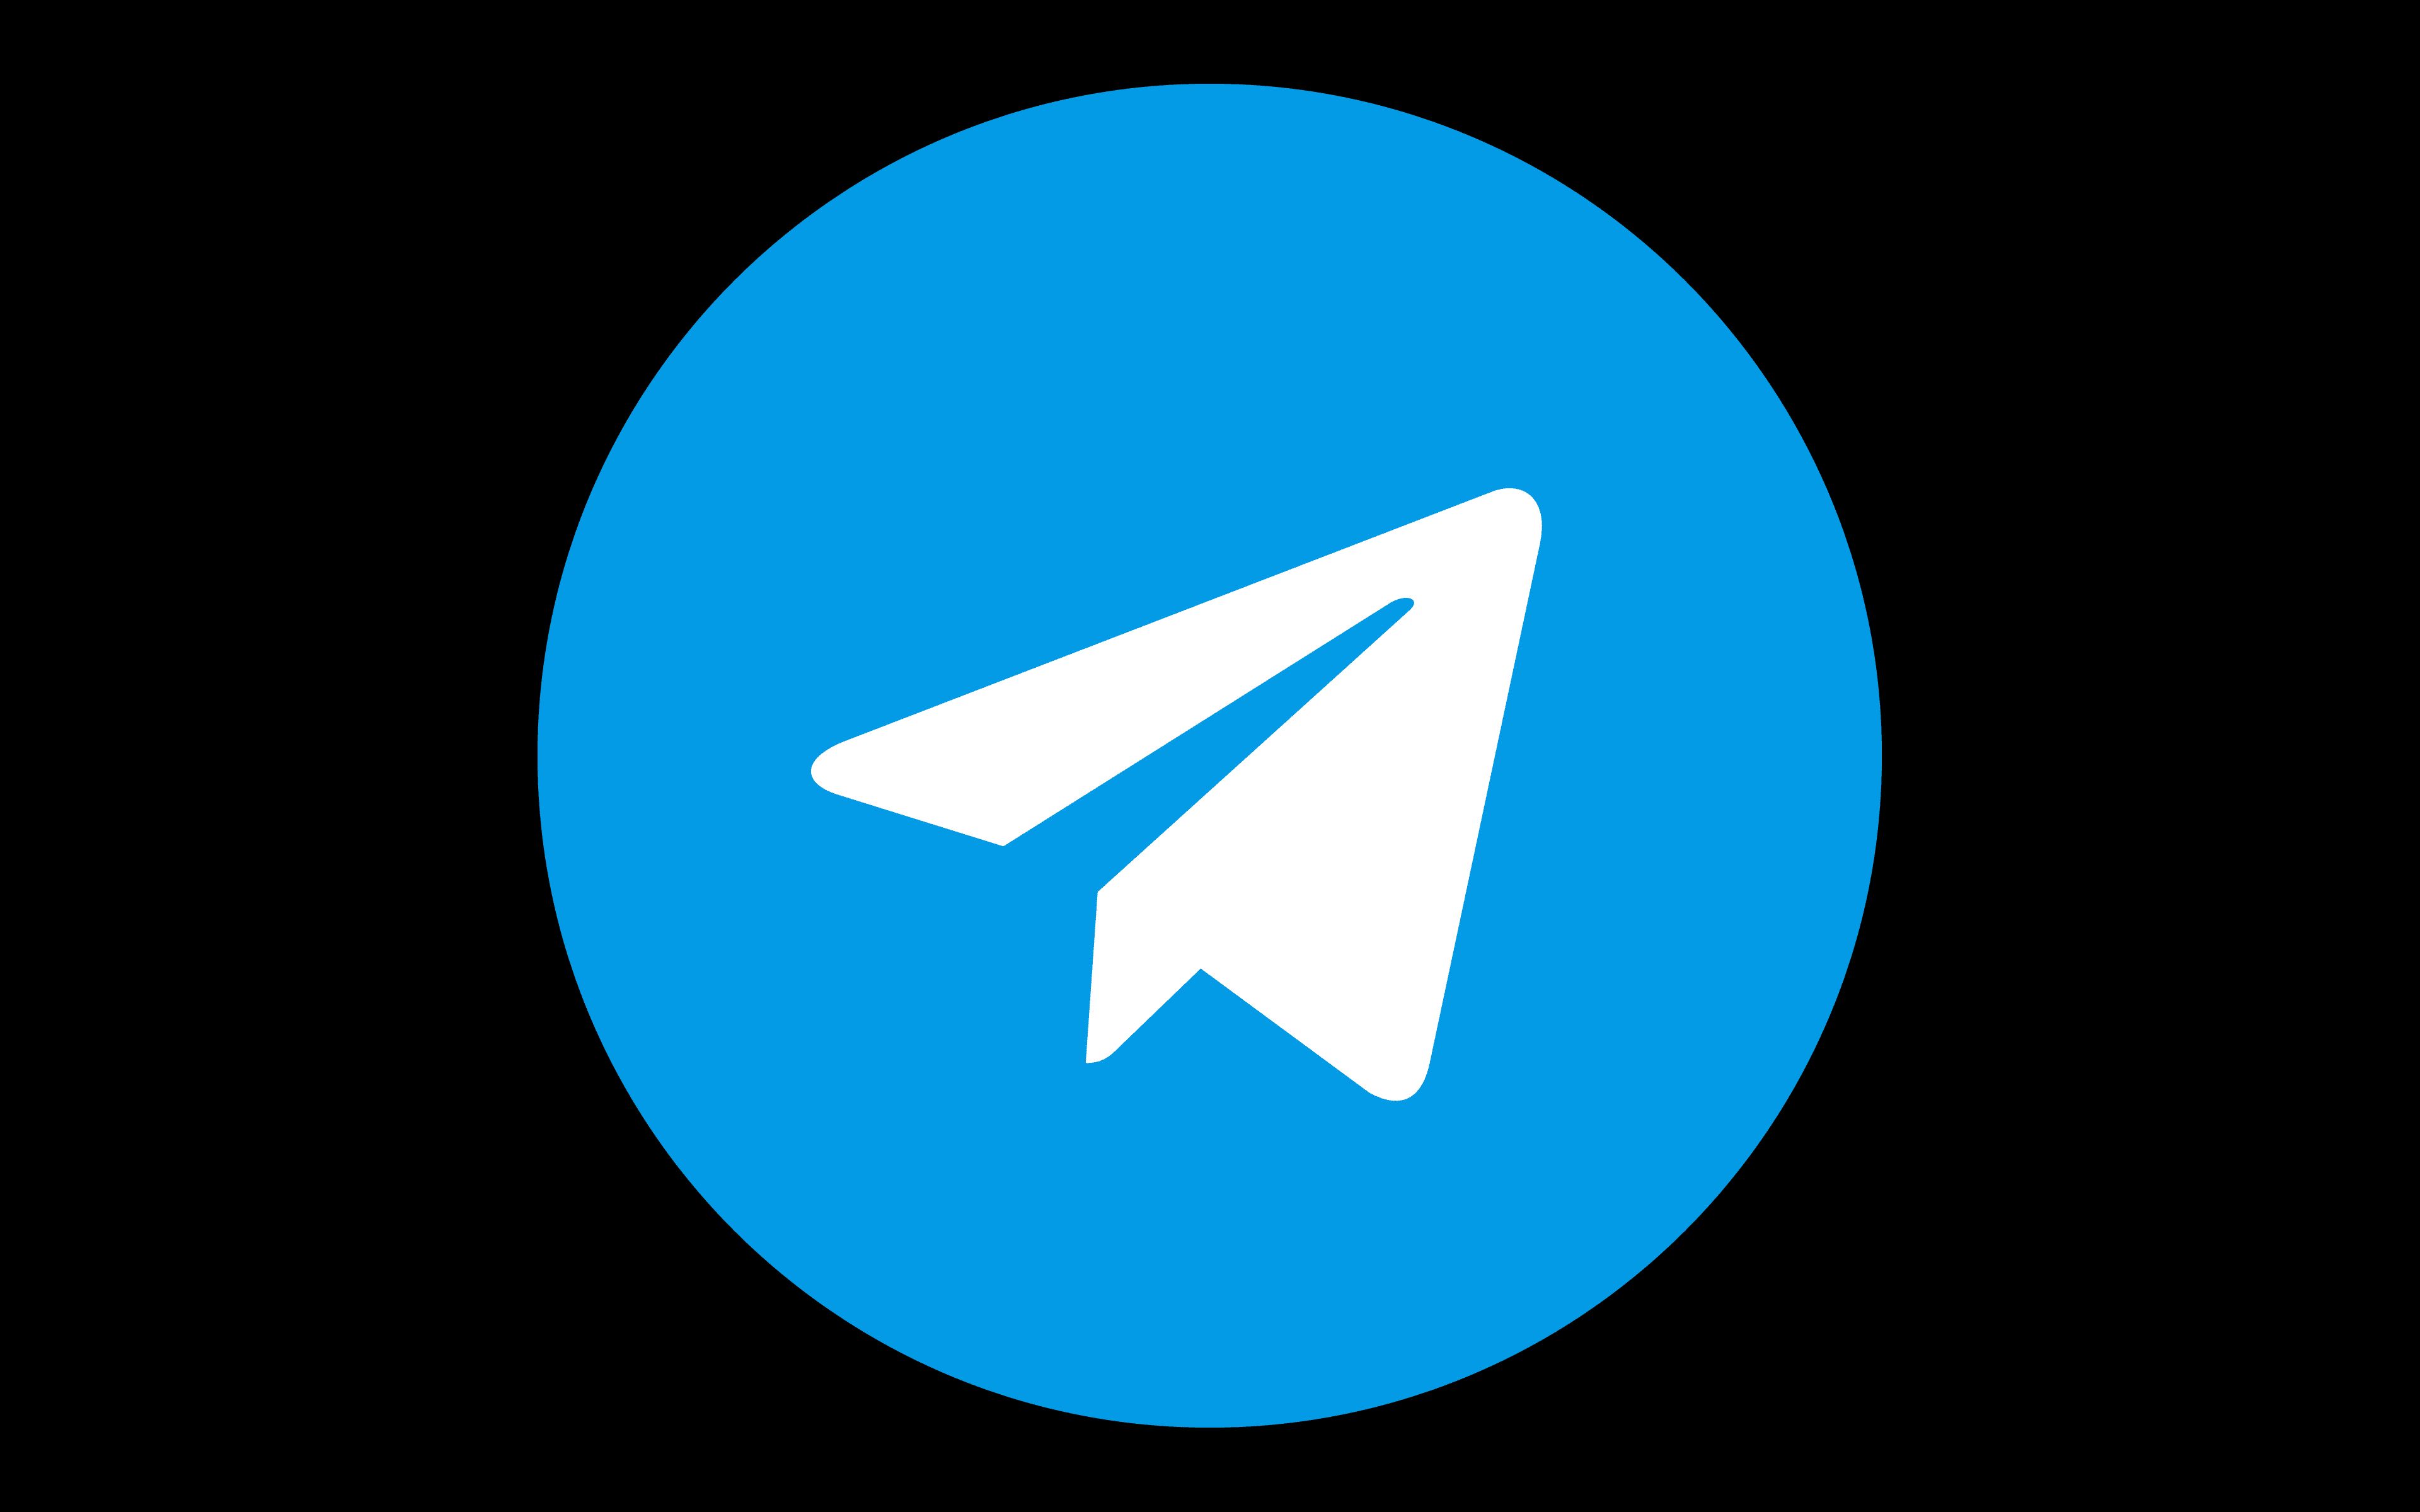 Картинка телеграм. Телеграмм. Telegram лого. Черный значок телеграмма. Иконка телеграмм на черном фоне.